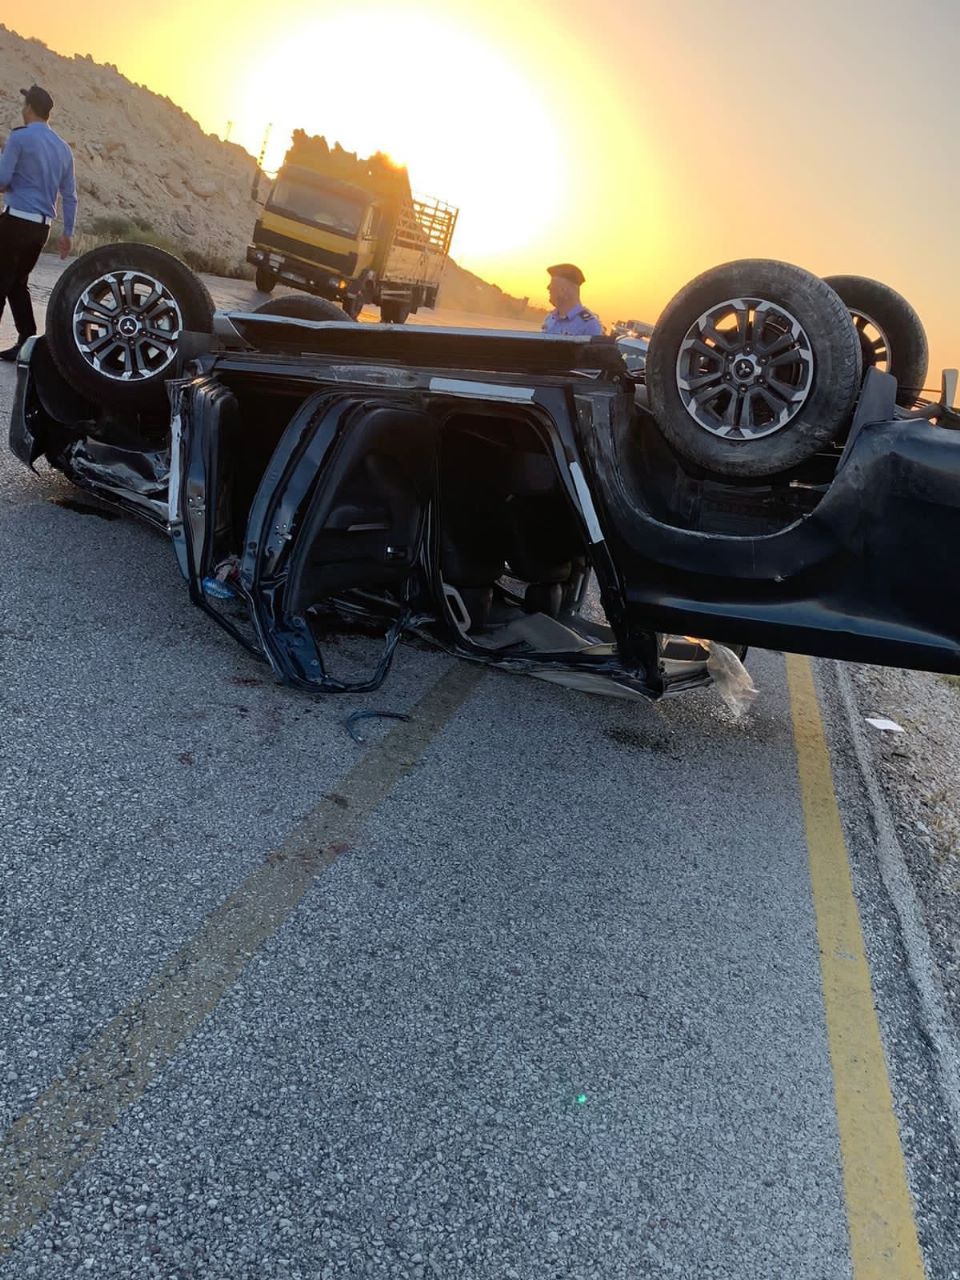  8 إصابات بحادث تصادم مركبات على طريق عمان - السلط 